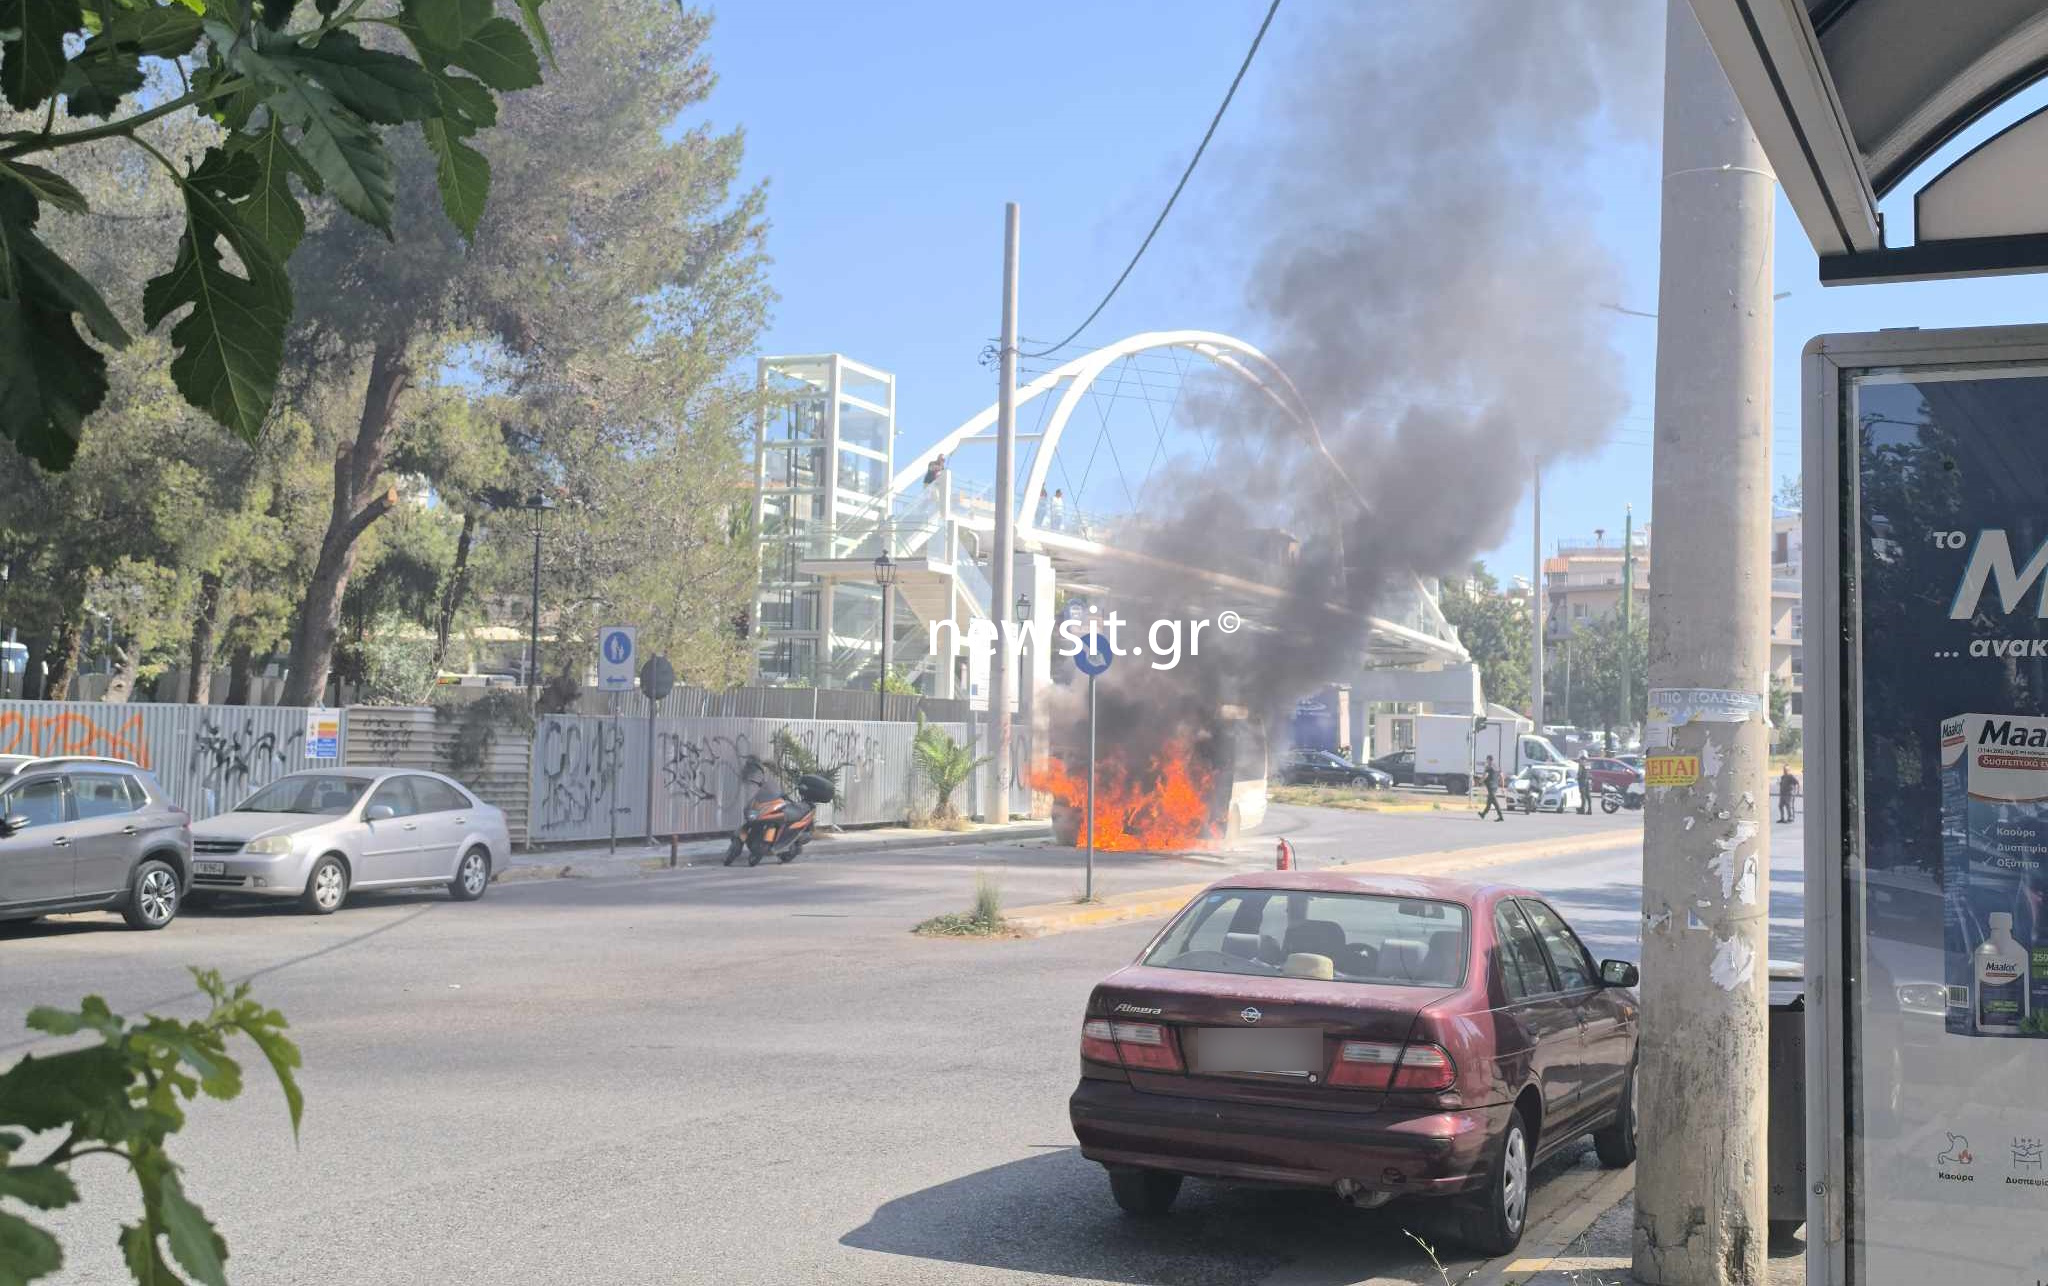 Χαϊδάρι: Τουριστικό λεωφορείο τυλίχθηκε στις φλόγες εν κινήσει στη Λεωφόρο Αθηνών